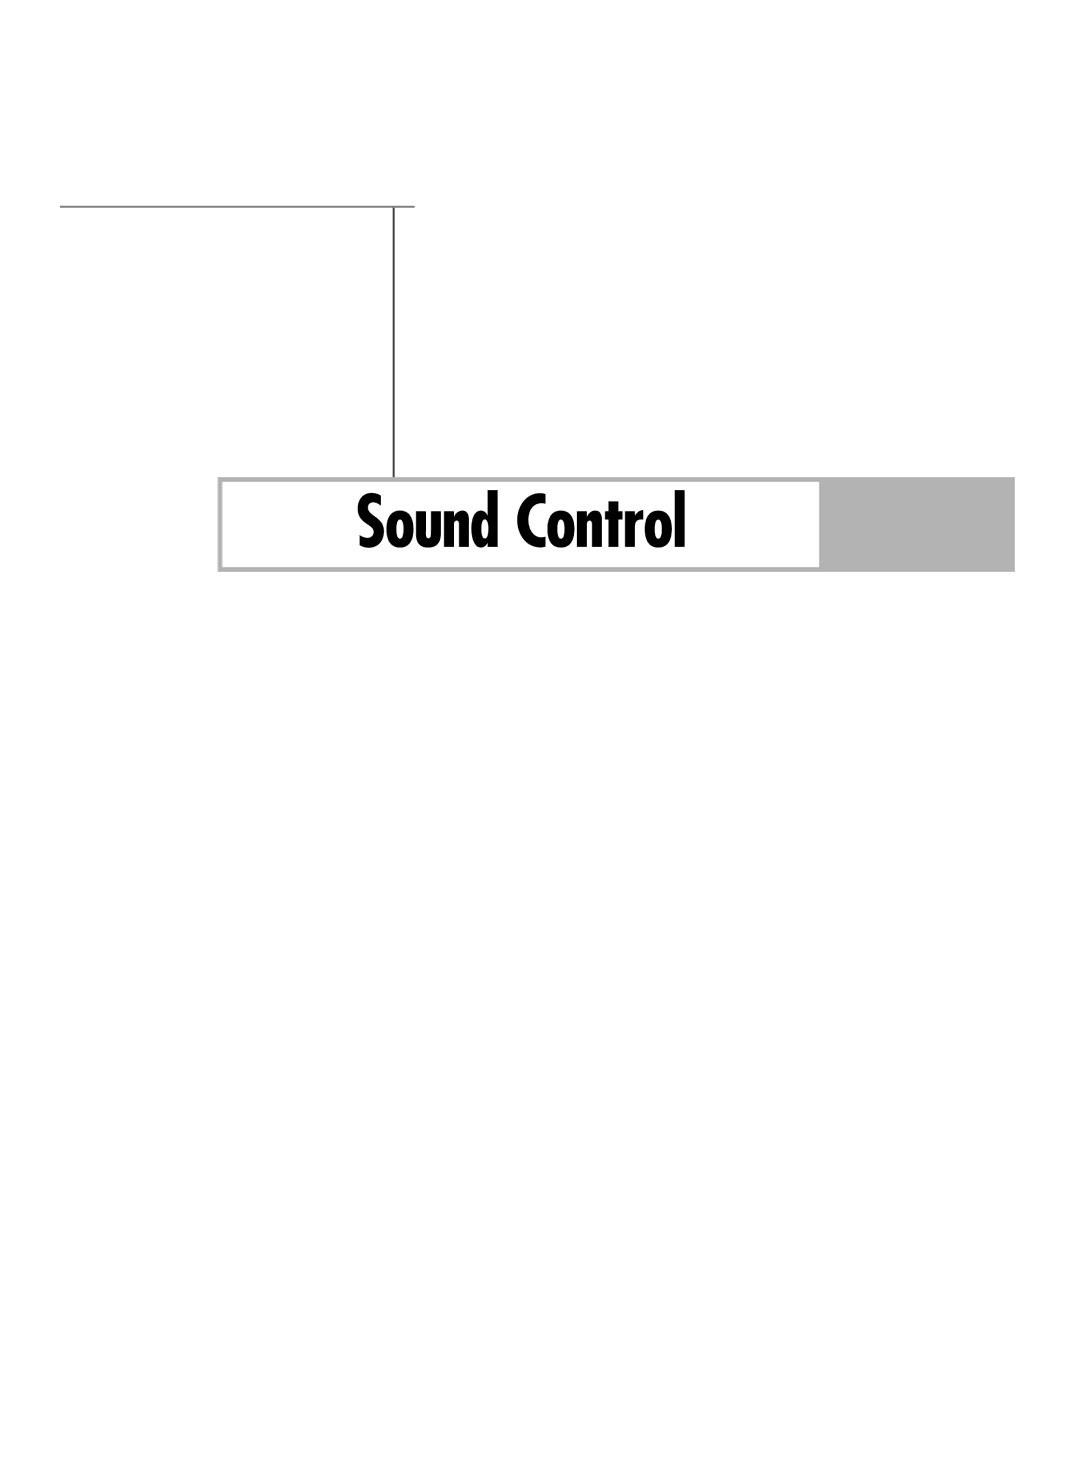 Samsung HL-R6767W manual Sound Control 